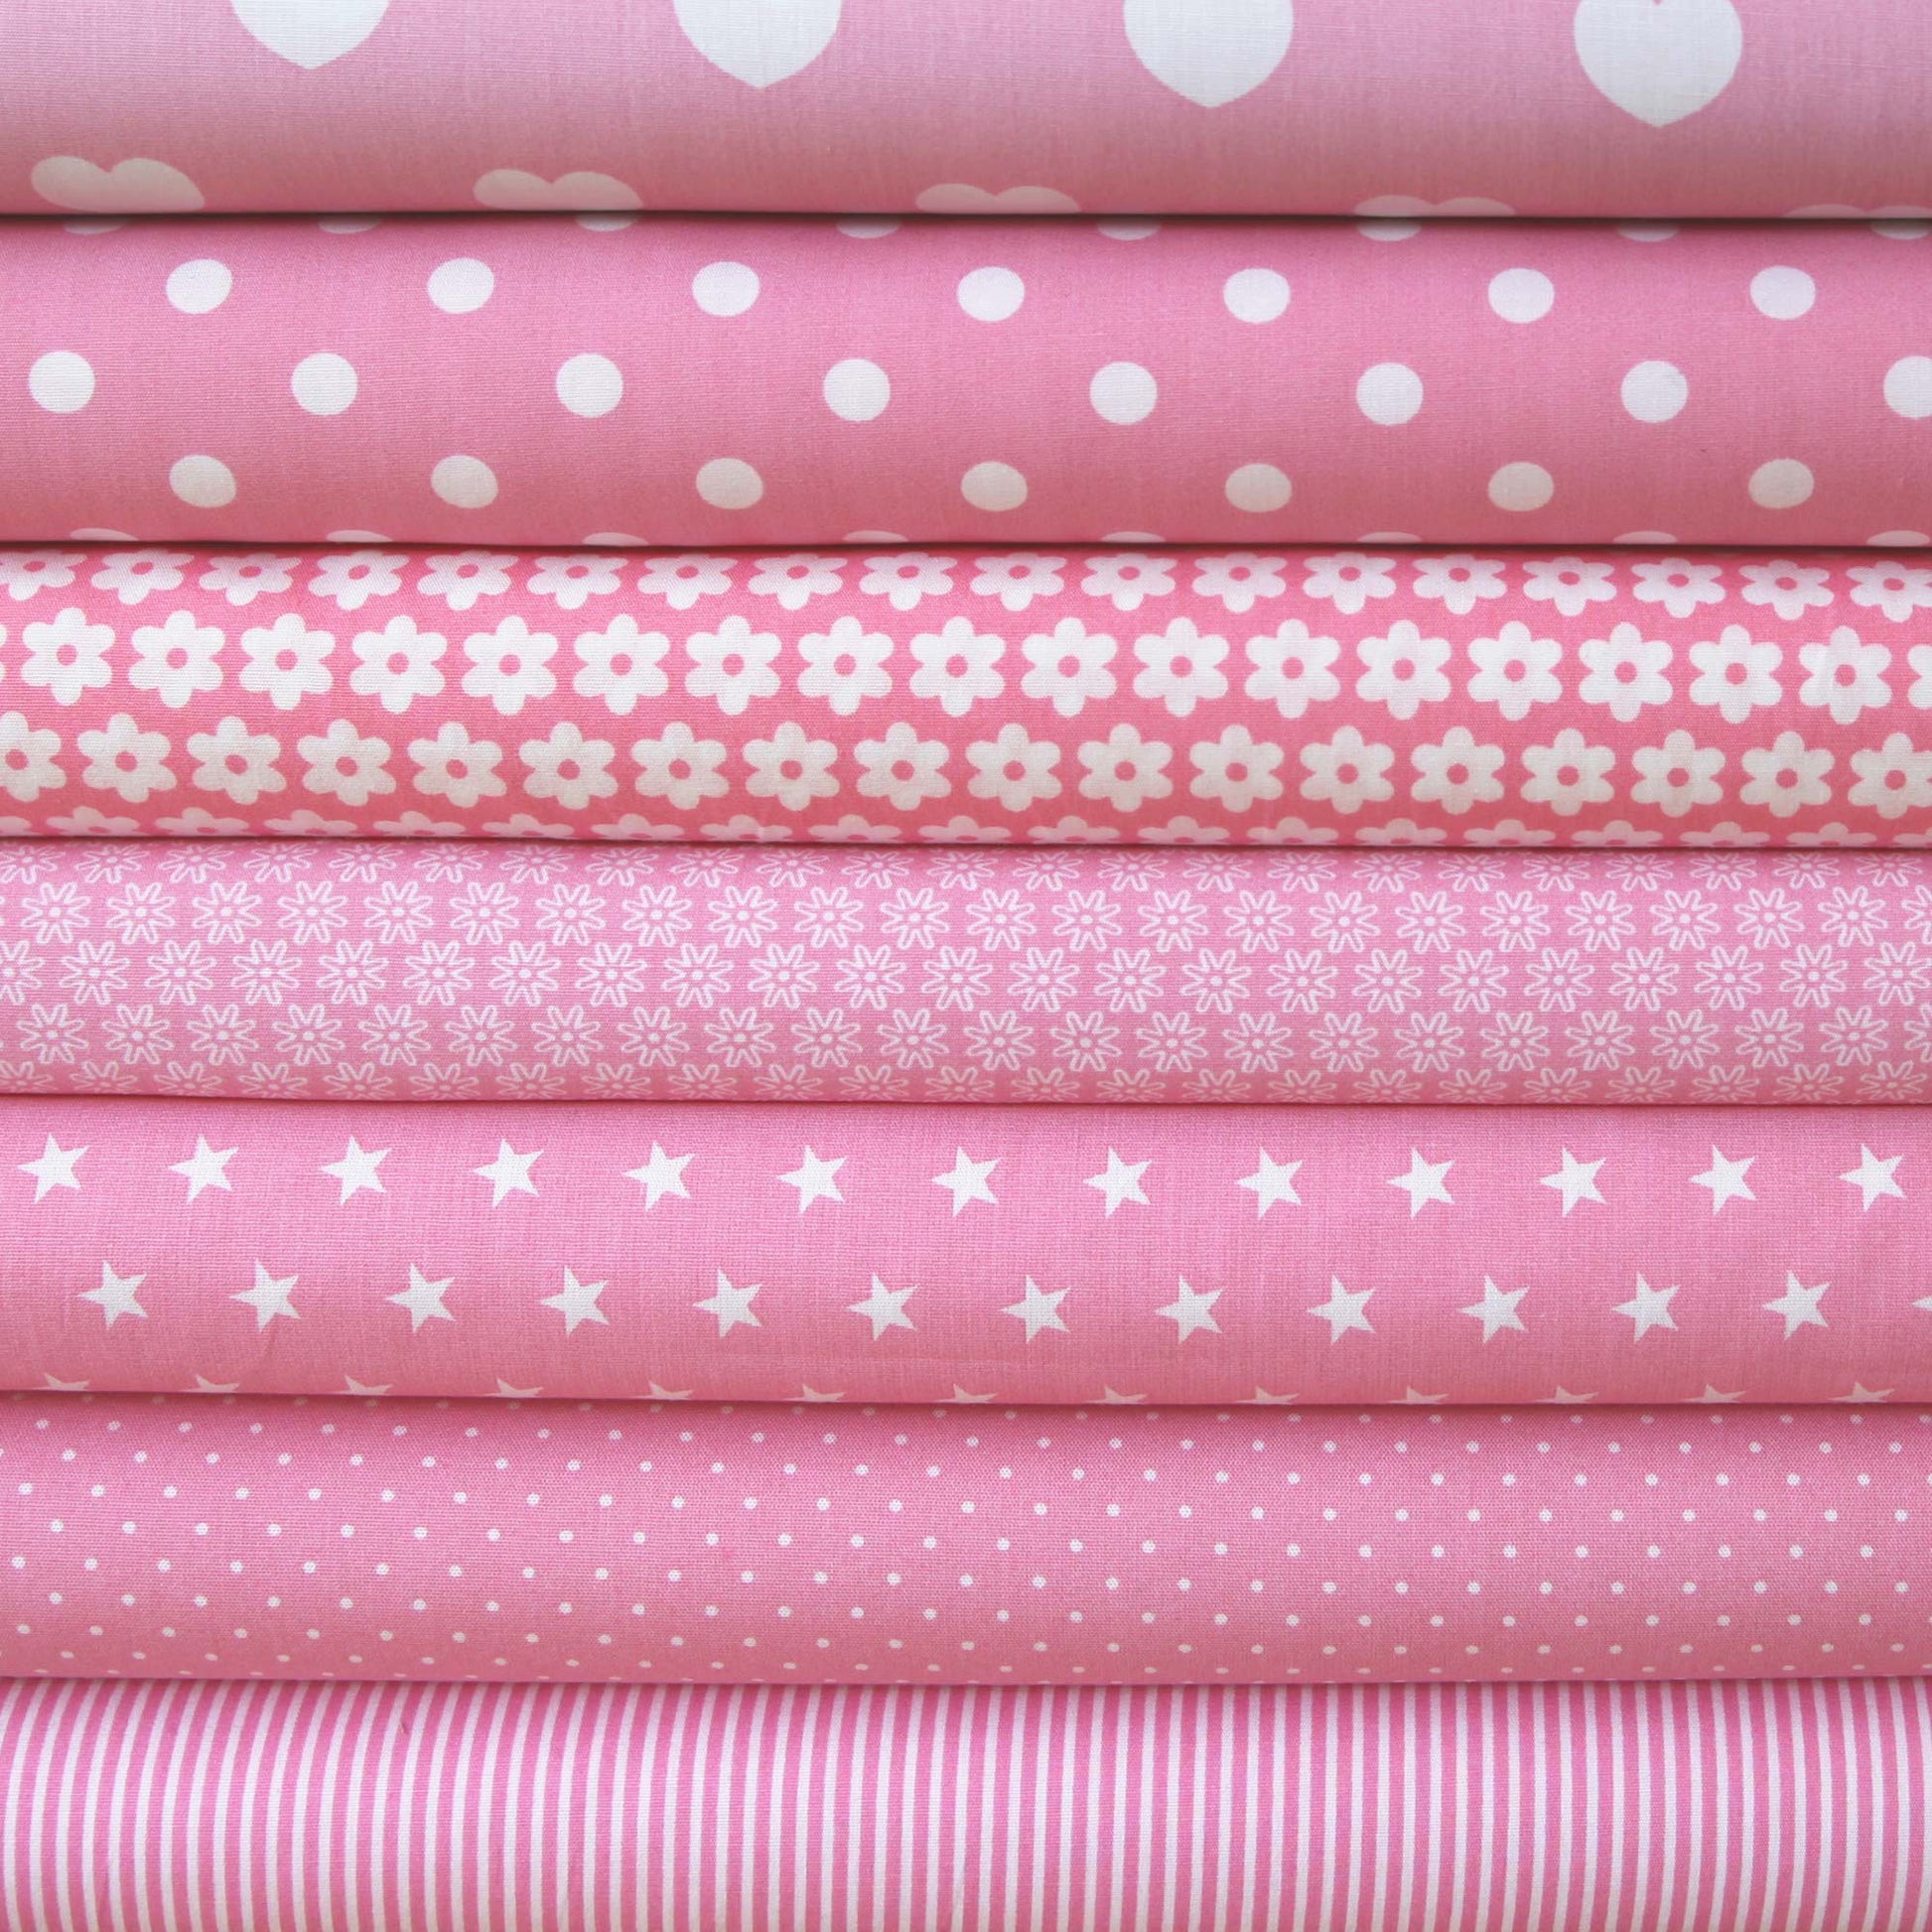 Baumwollstoff mit Linien / Popeline " 0,2 cm schmale weiße Streifen auf rosa" - Patchwork 100% Baumwolle babyrosa - Stoffe Kudellino